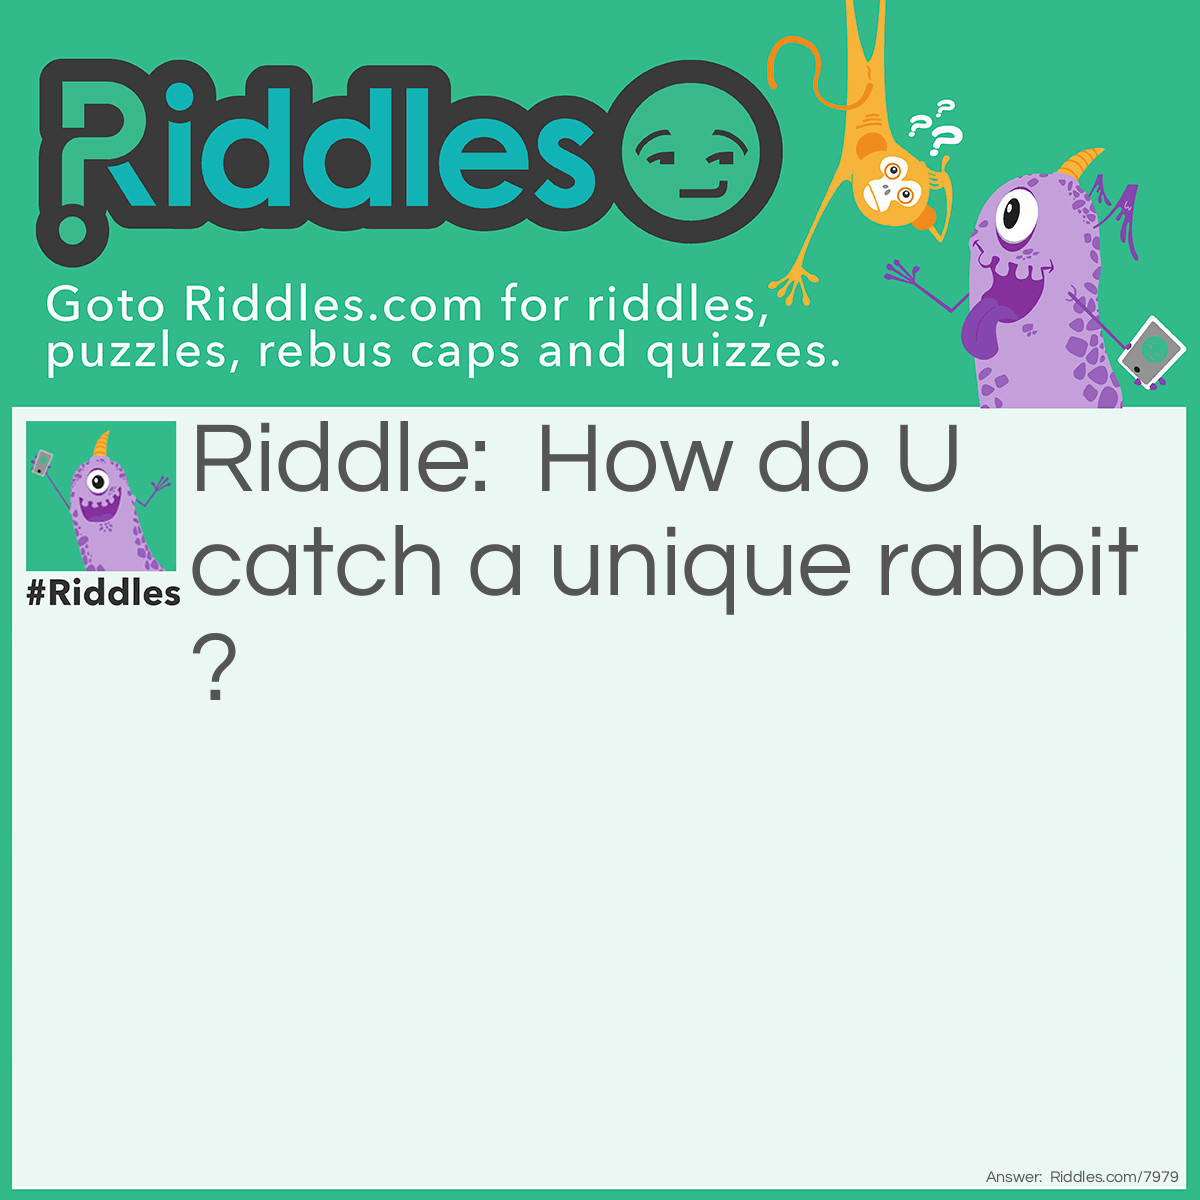 Riddle: How do U catch a unique rabbit? Answer: Unique up on them!